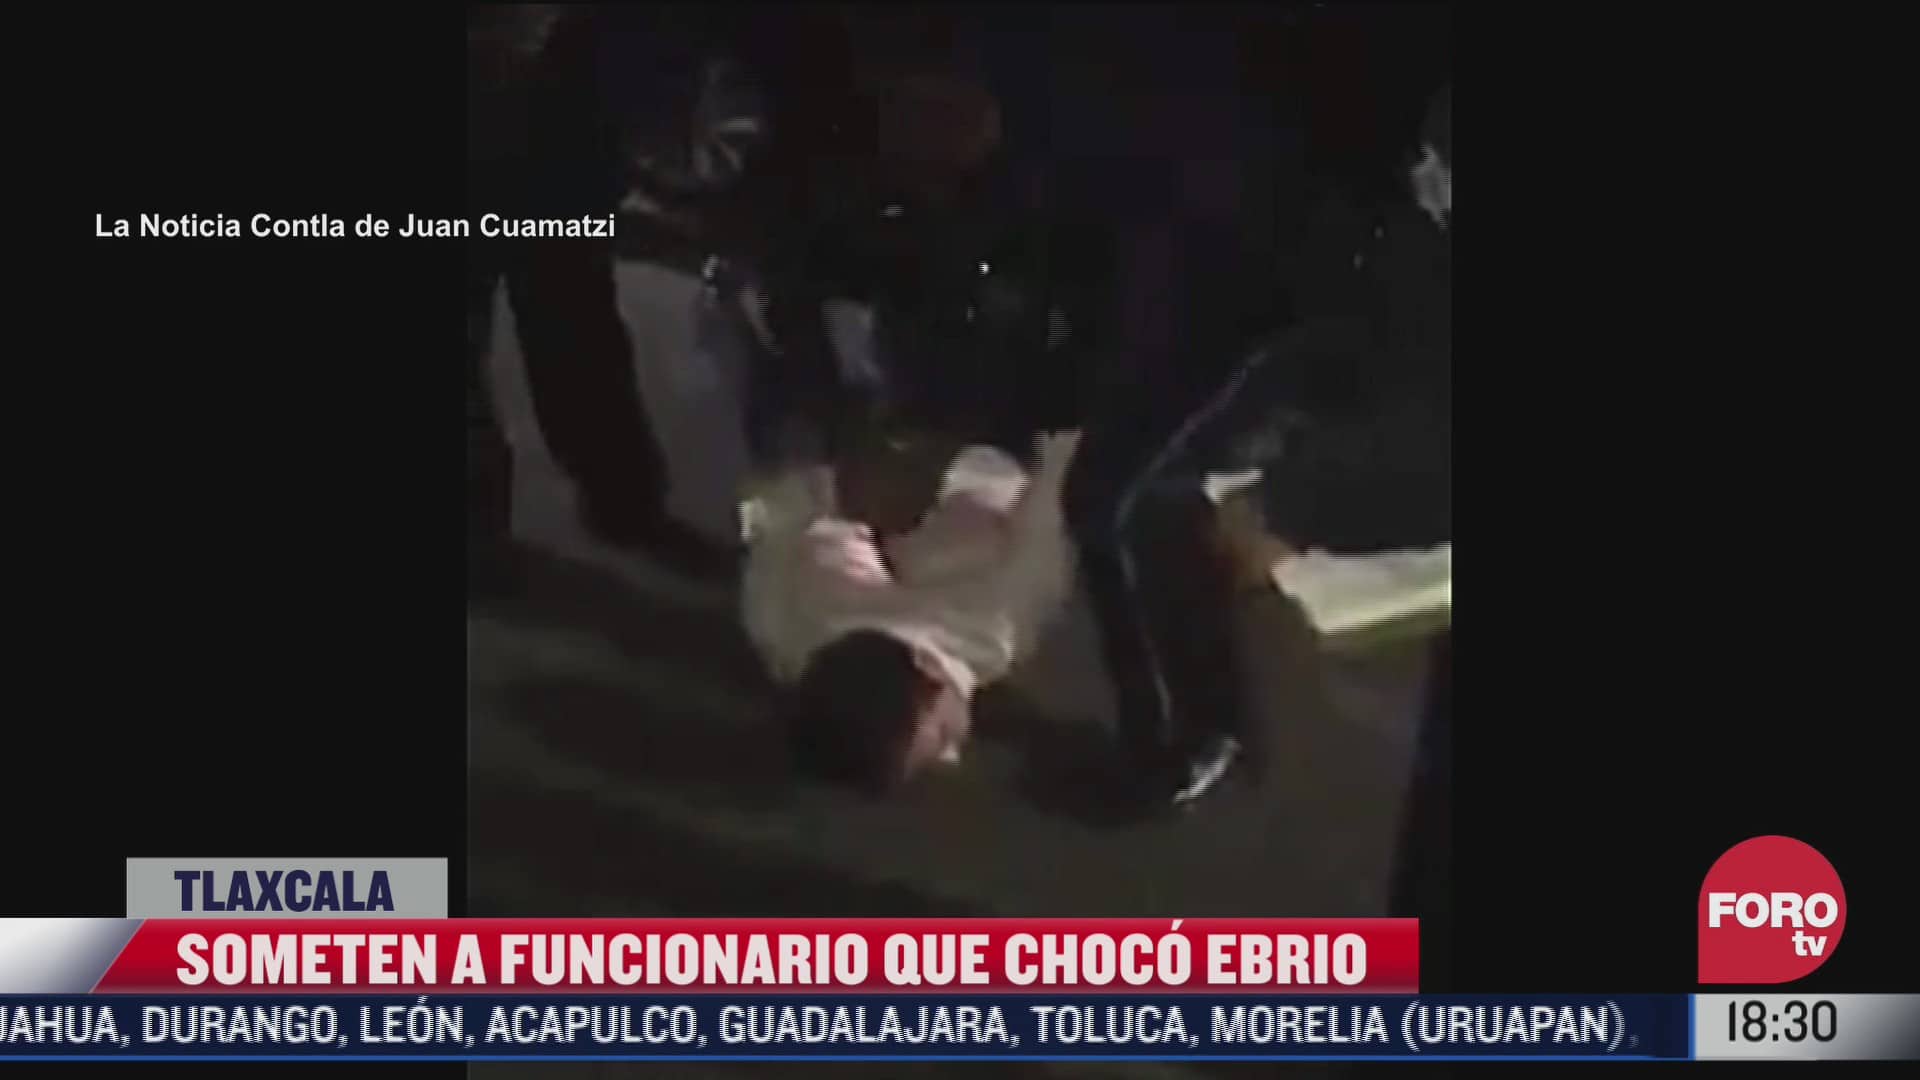 video someten a funcionario que choco ebrio en tlaxcala